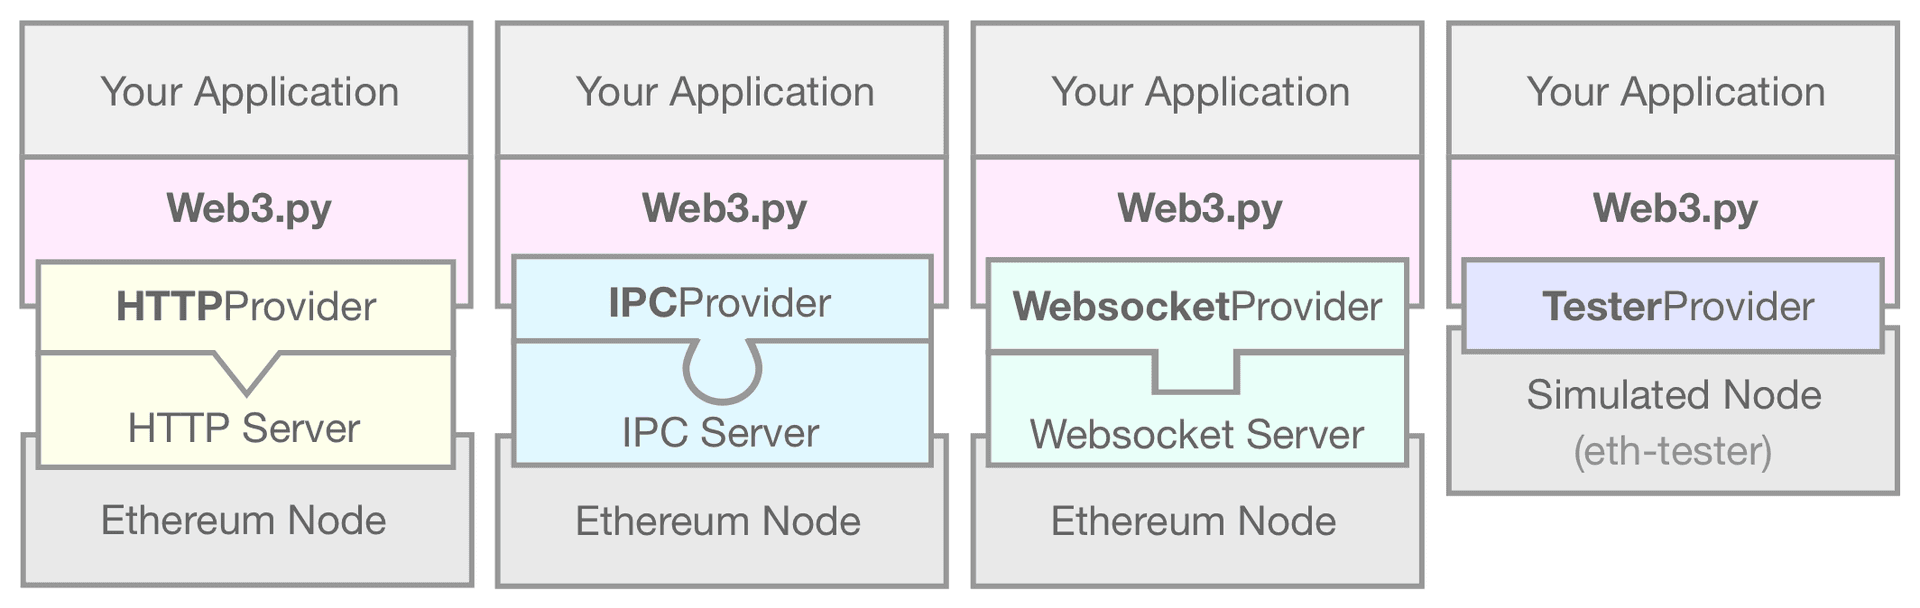 描述将 web3.py 应用程序连接到模拟以太坊节点的 EthereumTesterProvider 的示意图